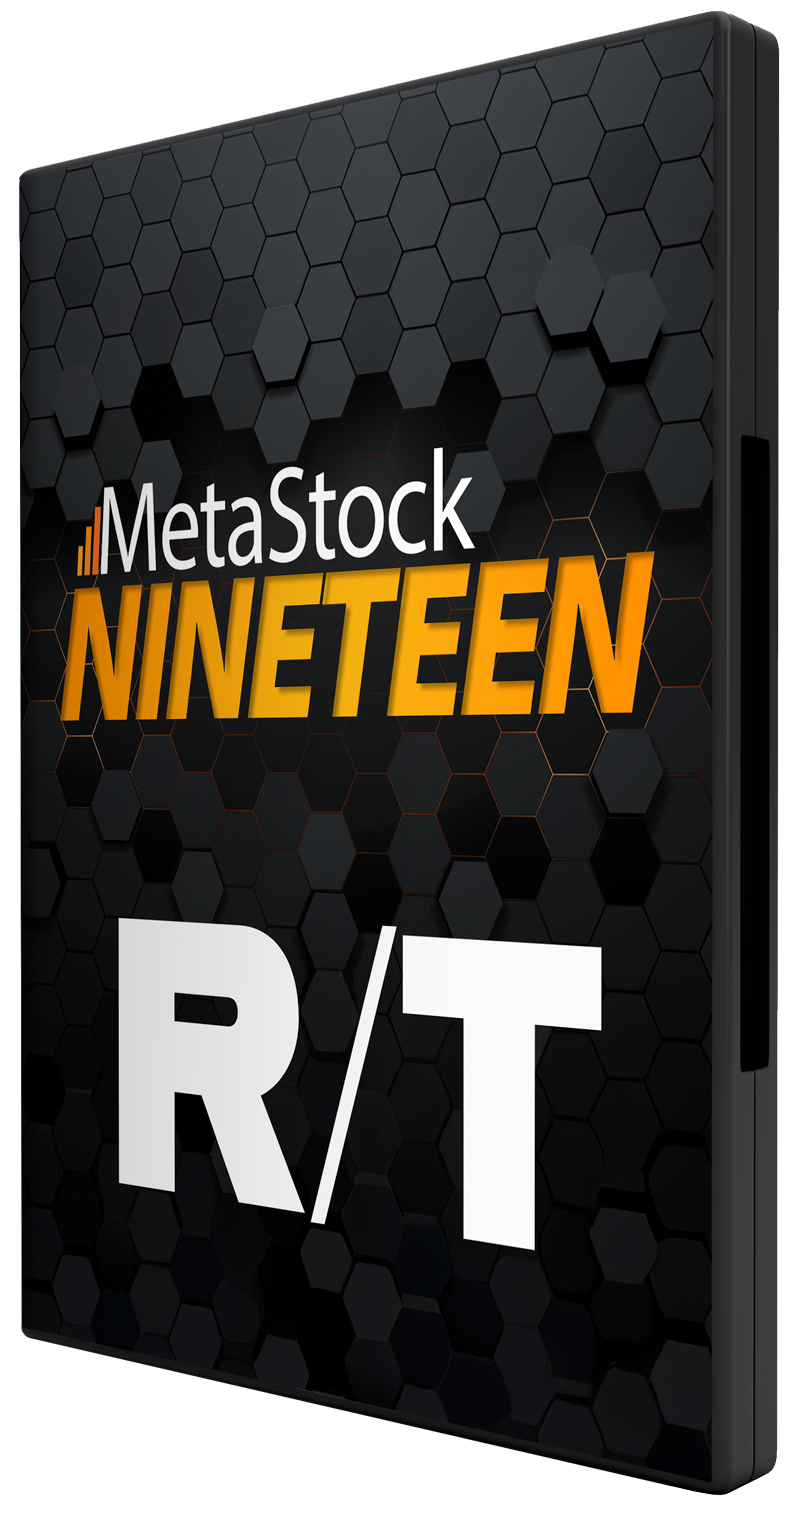 MetaStock NINETEEN R/T